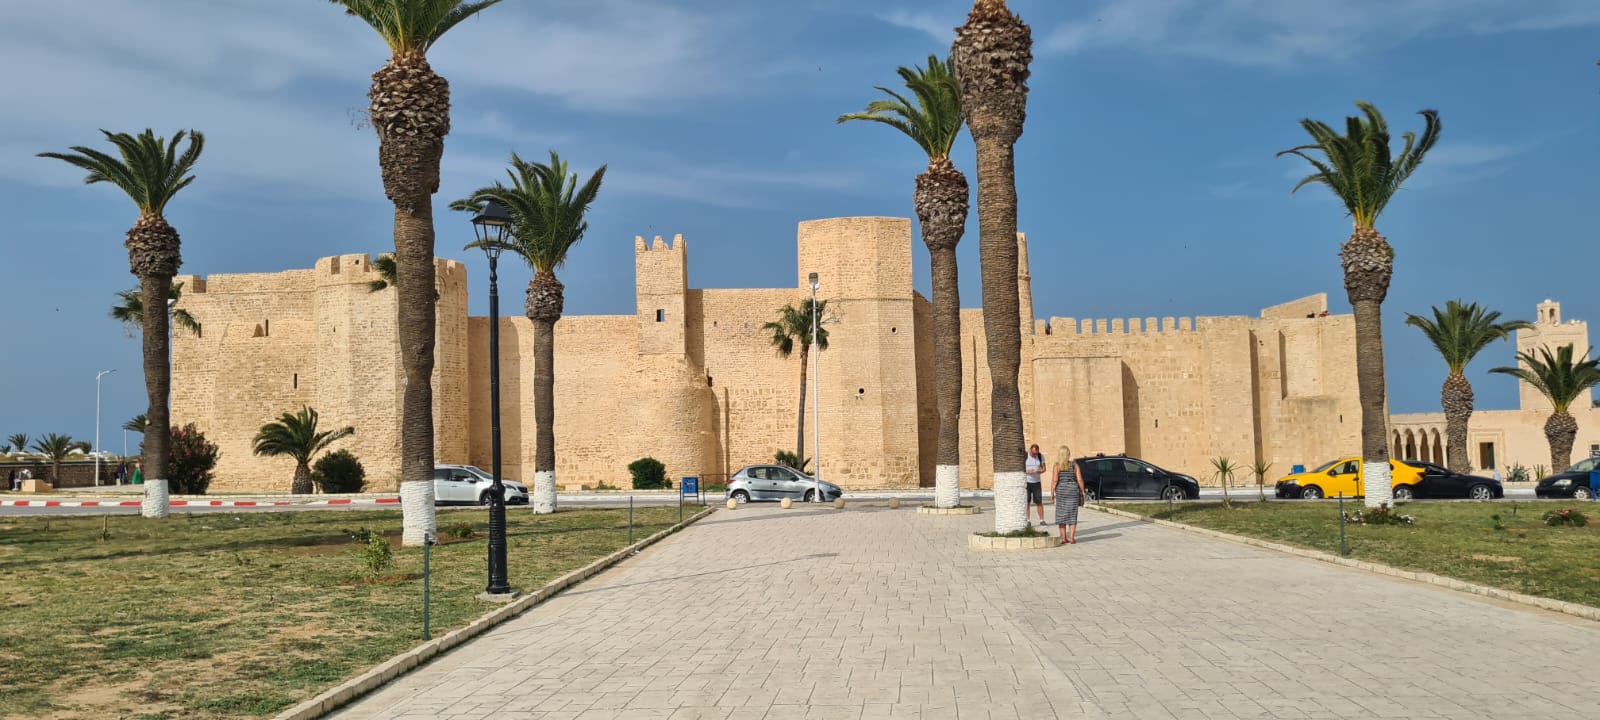 Castelul Ribat, din Tunisia